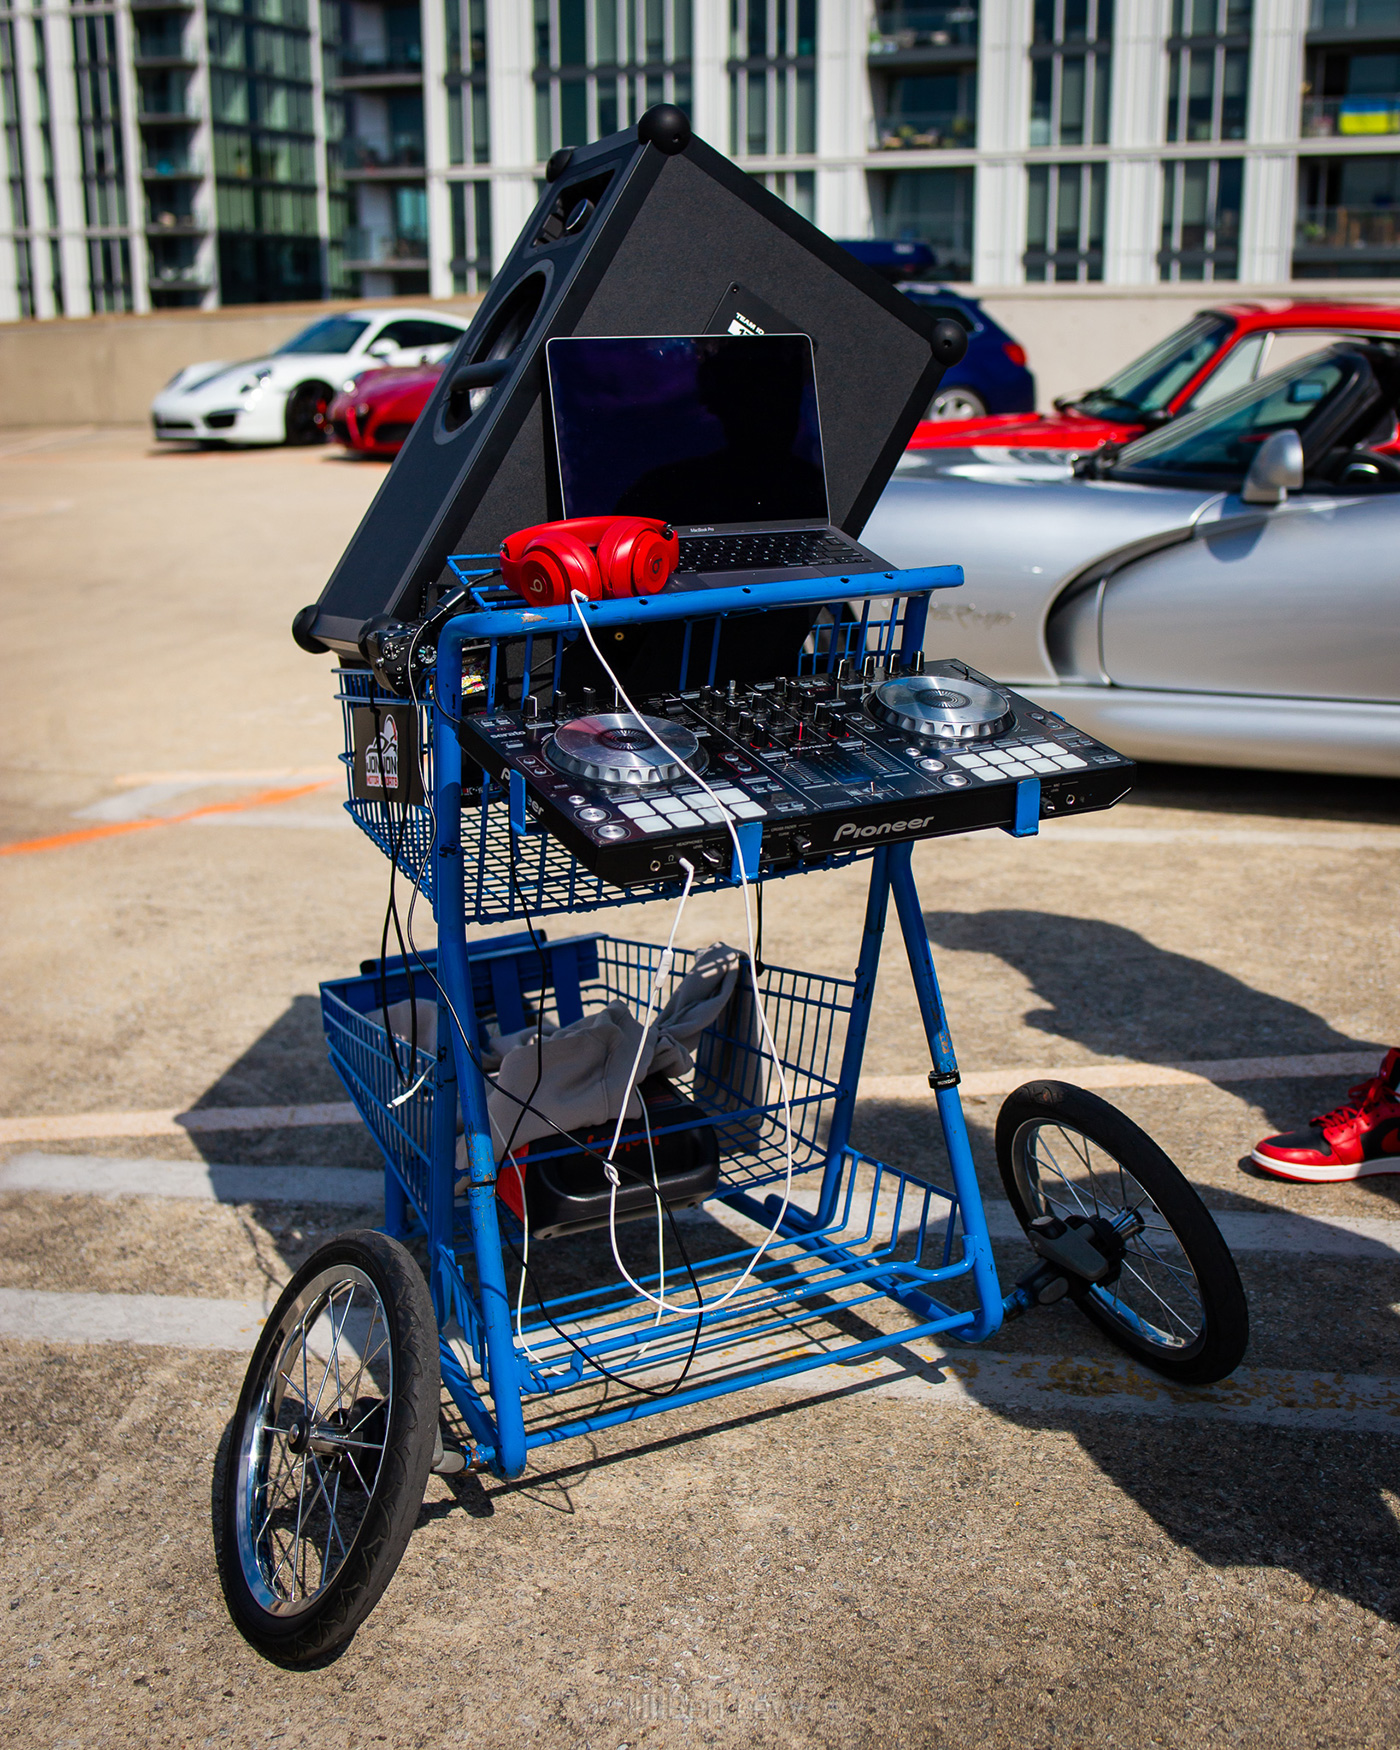 Mobile DJ setup in shopping cart